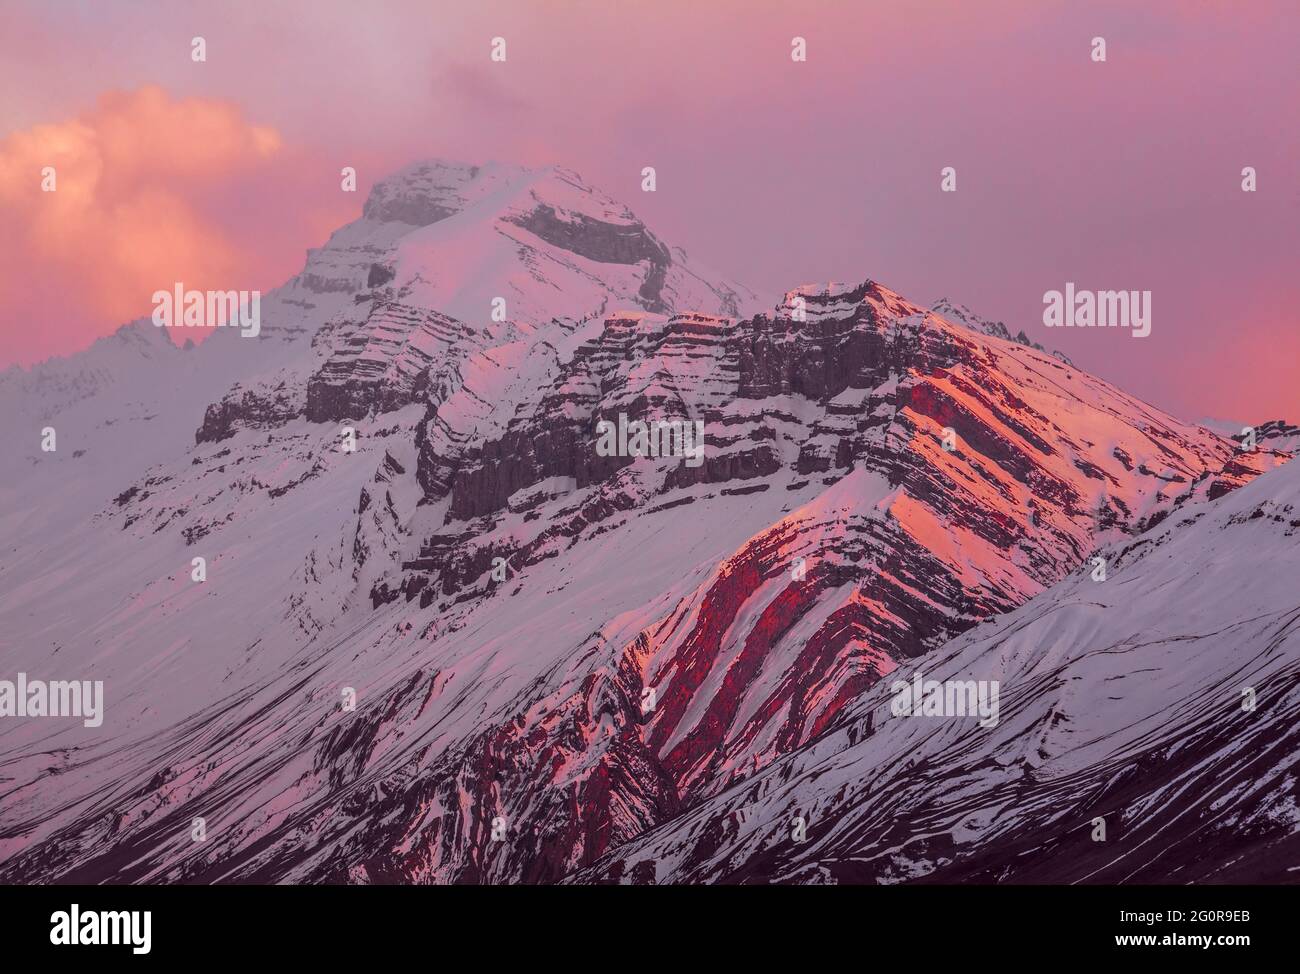 Fascino magico della natura: Incantevoli linee curve di rocce ignee e sedimentarie nelle alture dell'Himalaya al tramonto Foto Stock